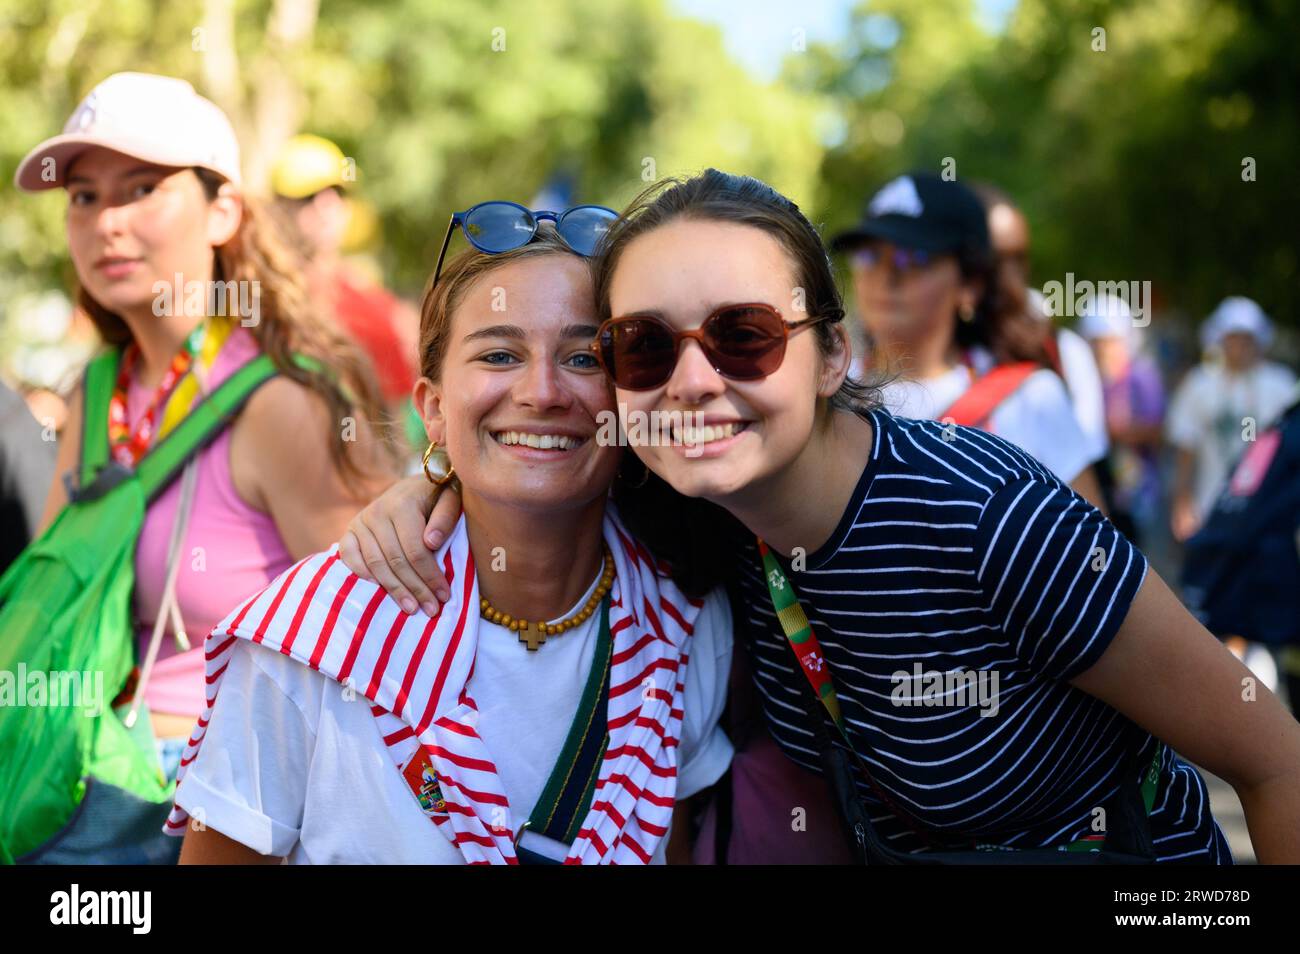 Pellegrini, ragazze francesi, che si recano in posa per una foto durante il loro viaggio verso la Santa messa di apertura nel Parque Eduardo VII a Lisbona, Portogallo. Foto Stock